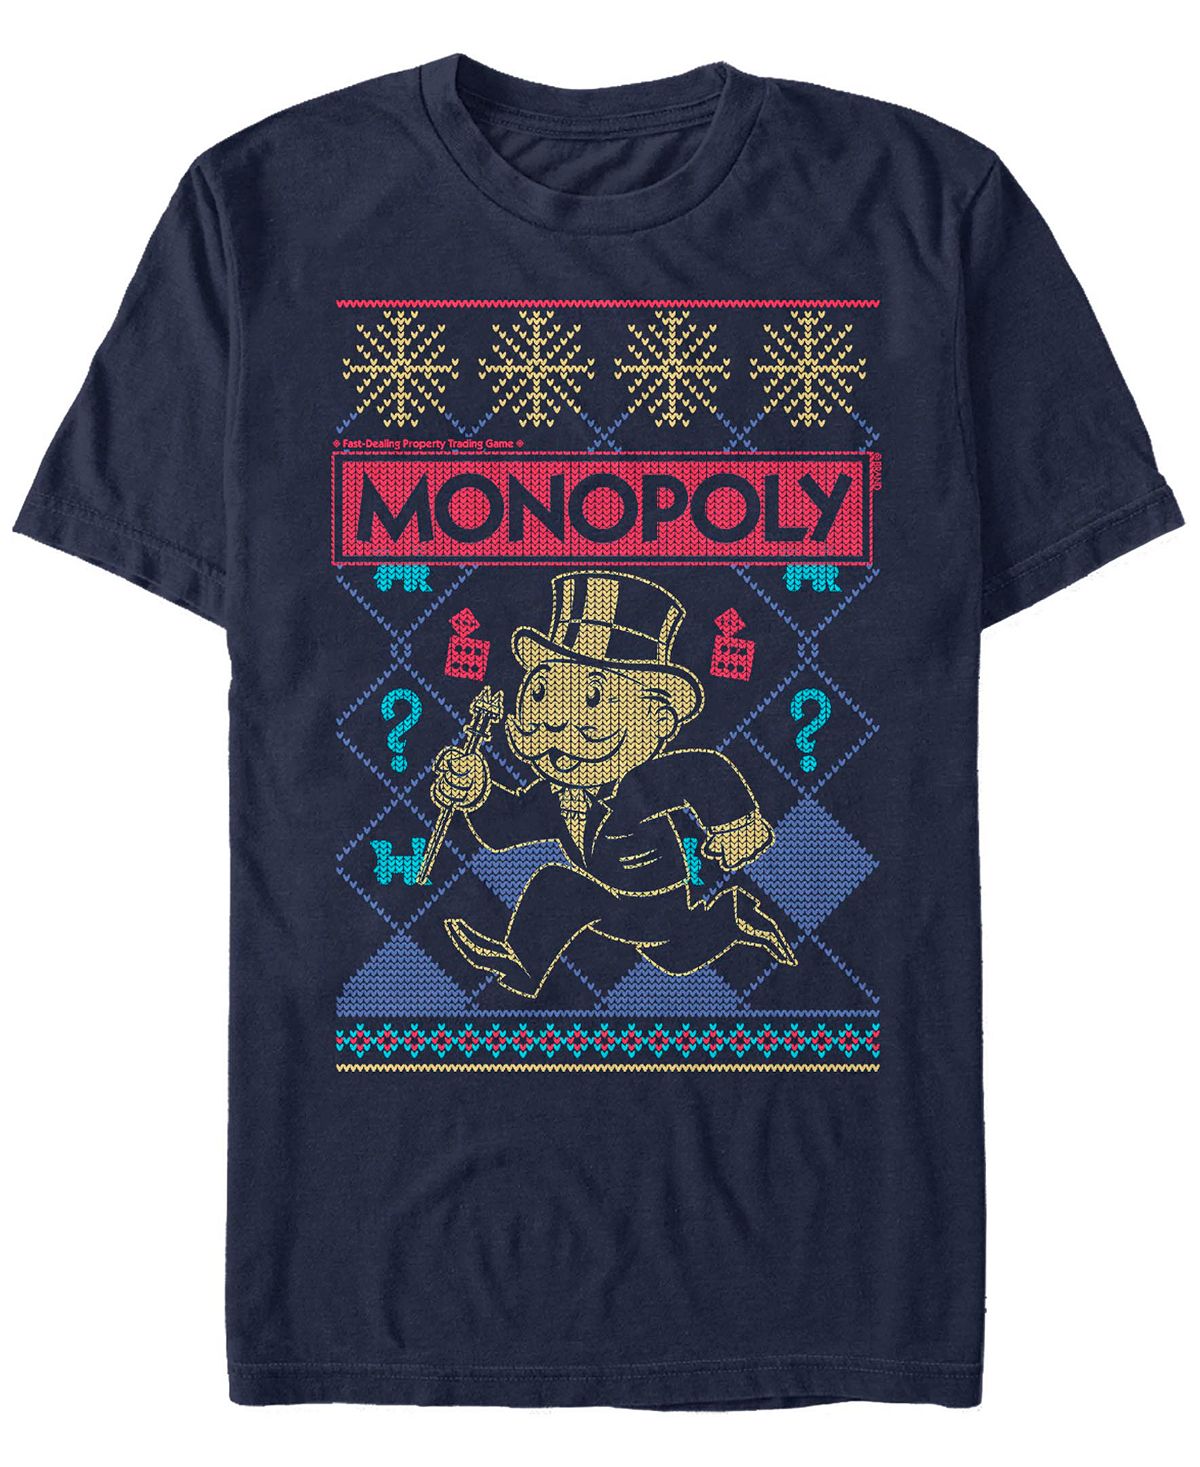 Мужская футболка с коротким рукавом в рождественском стиле monopoly Fifth Sun, синий мужская футболка с коротким рукавом monopoly hustle hard fifth sun синий